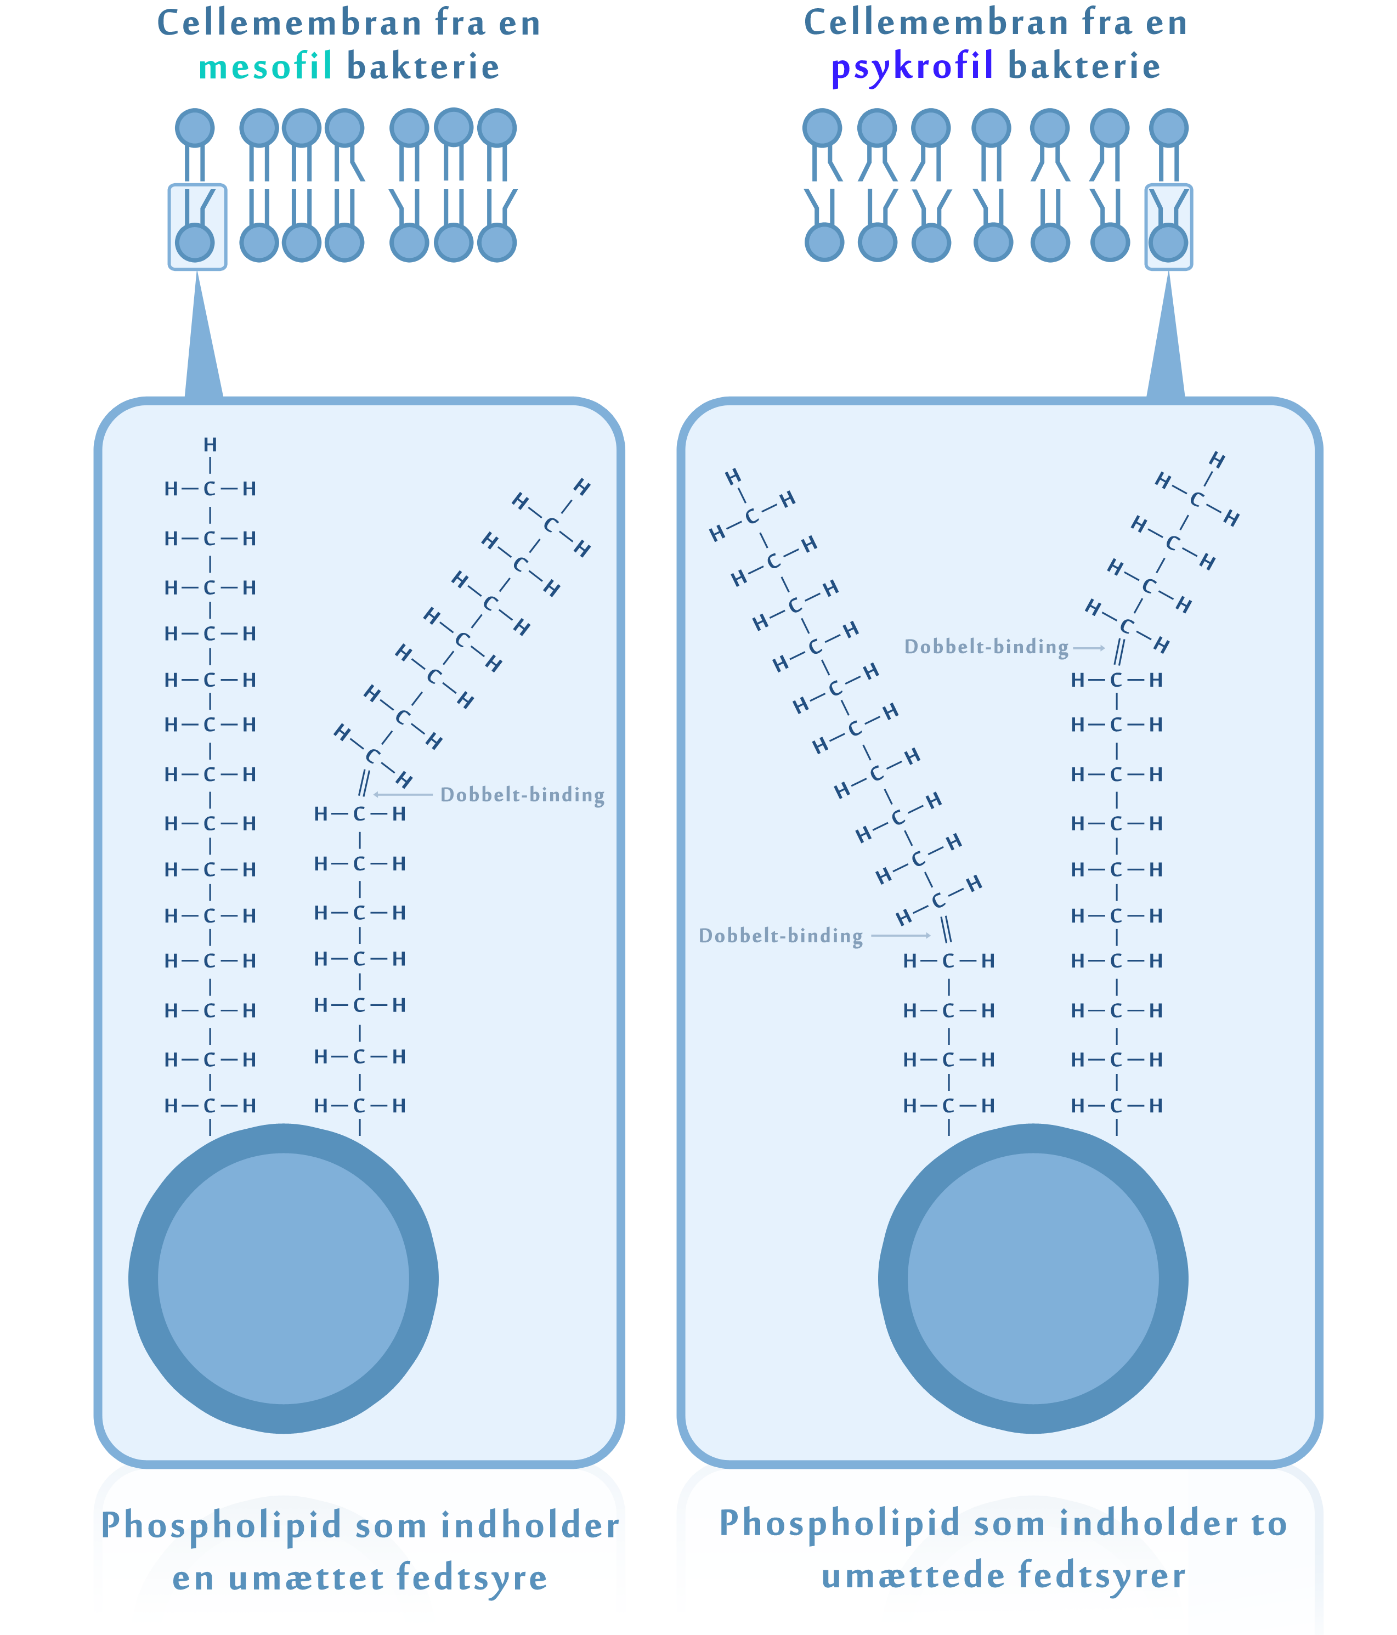 Figur 2. Sammenligning af cellemembranen hos mesofile og psykrofile bakterier.